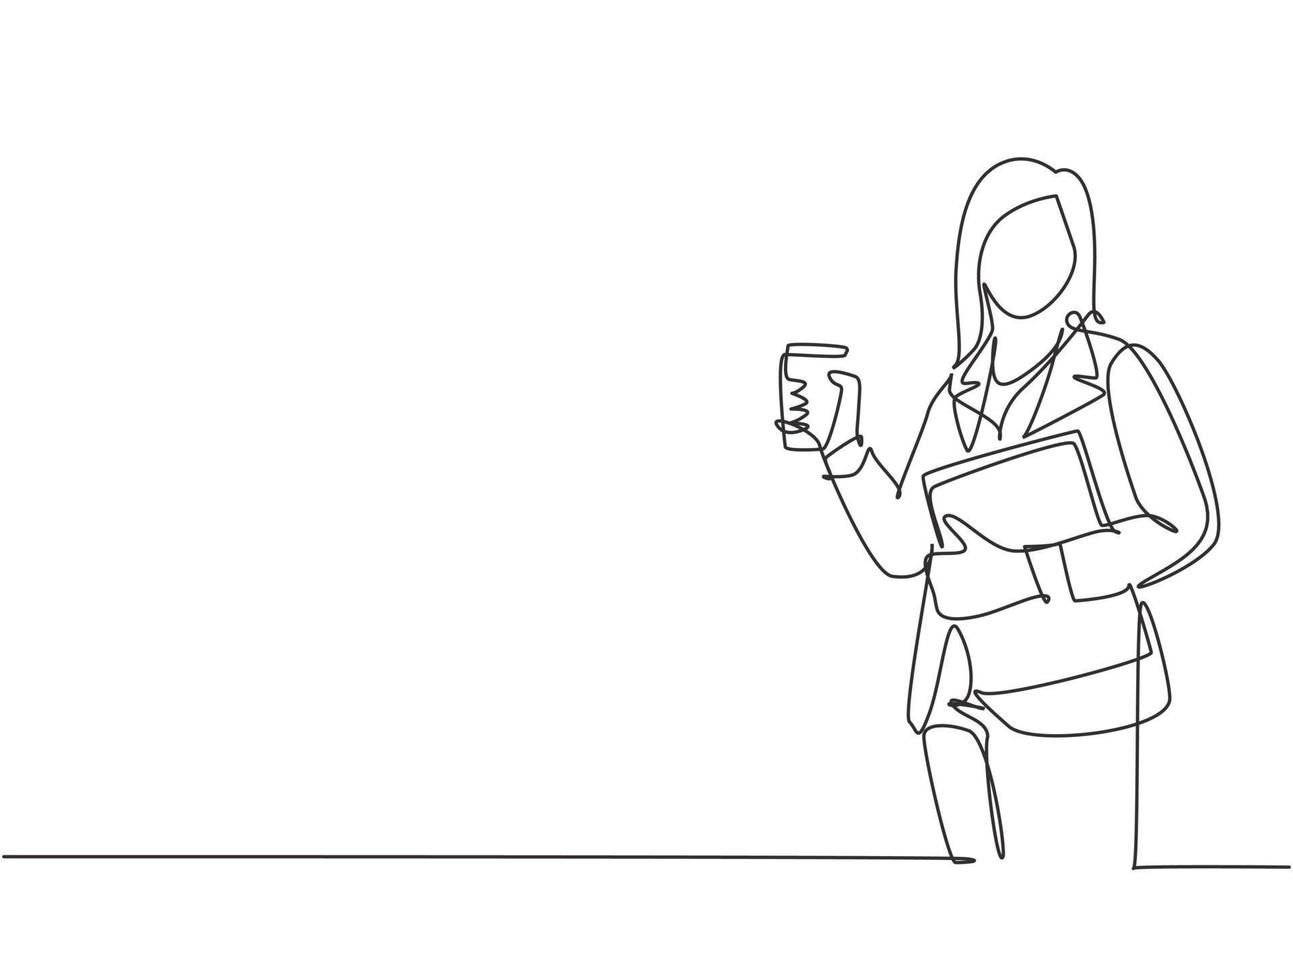 enda kontinuerlig ritning av ung kvinnlig arbetare som går för att gå till kontoret medan han håller ett glas kaffe och mappbindare. dricka te koncept en rad rita design vektor illustration